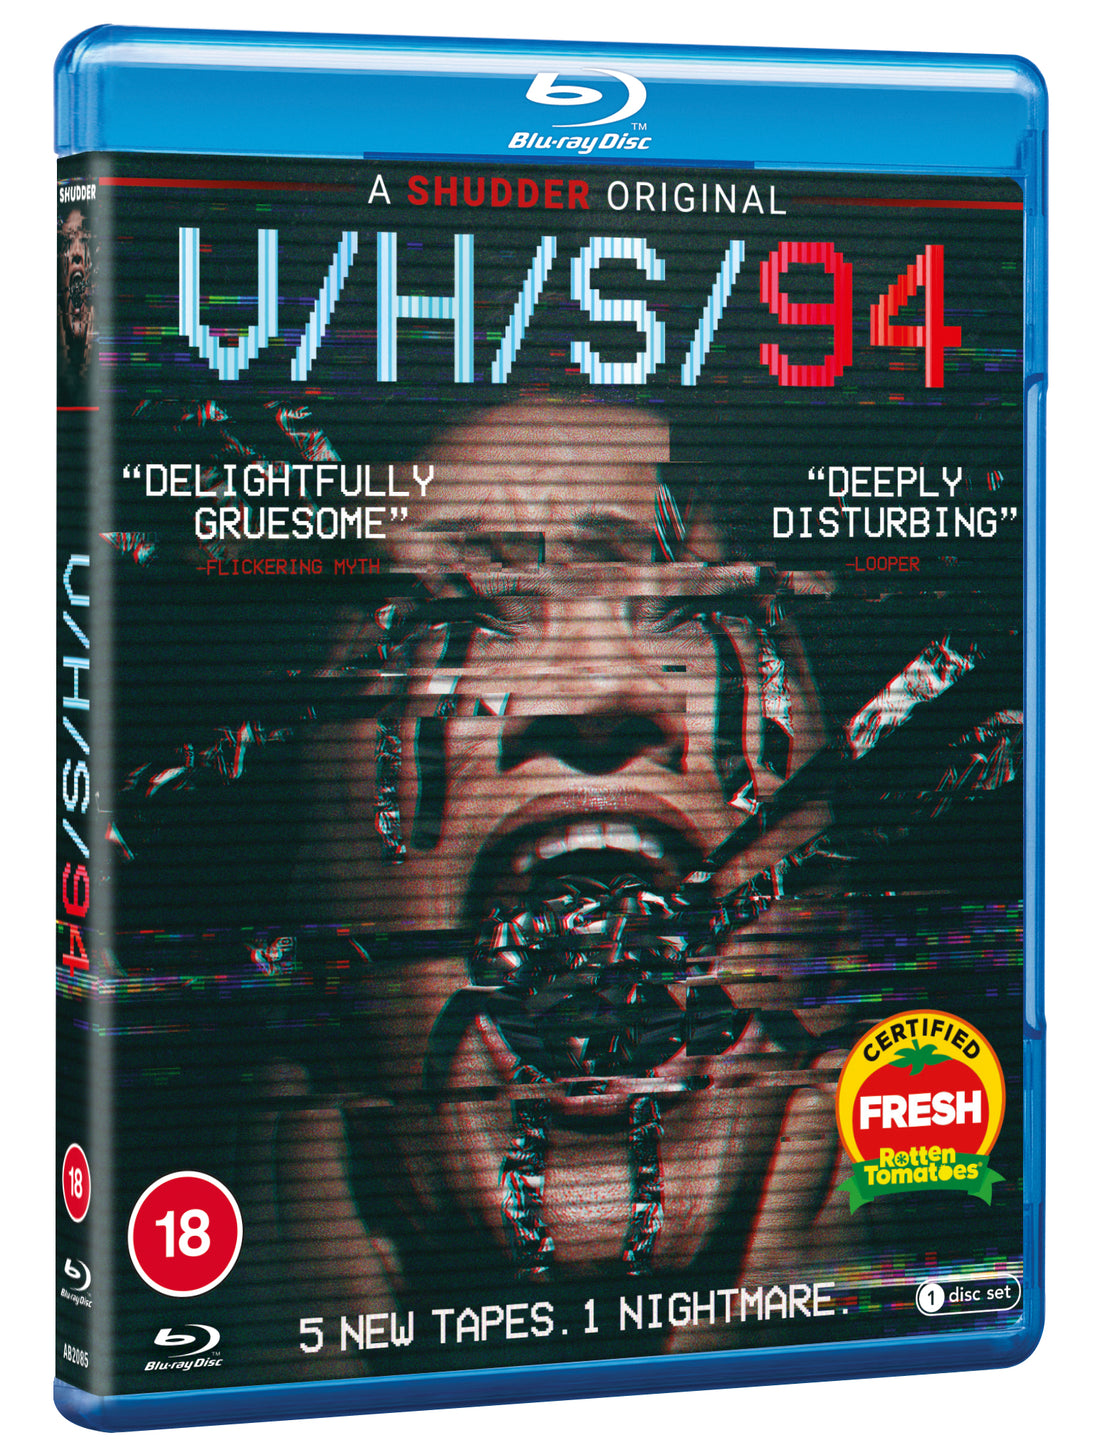 VHS94 Blu-ray Art